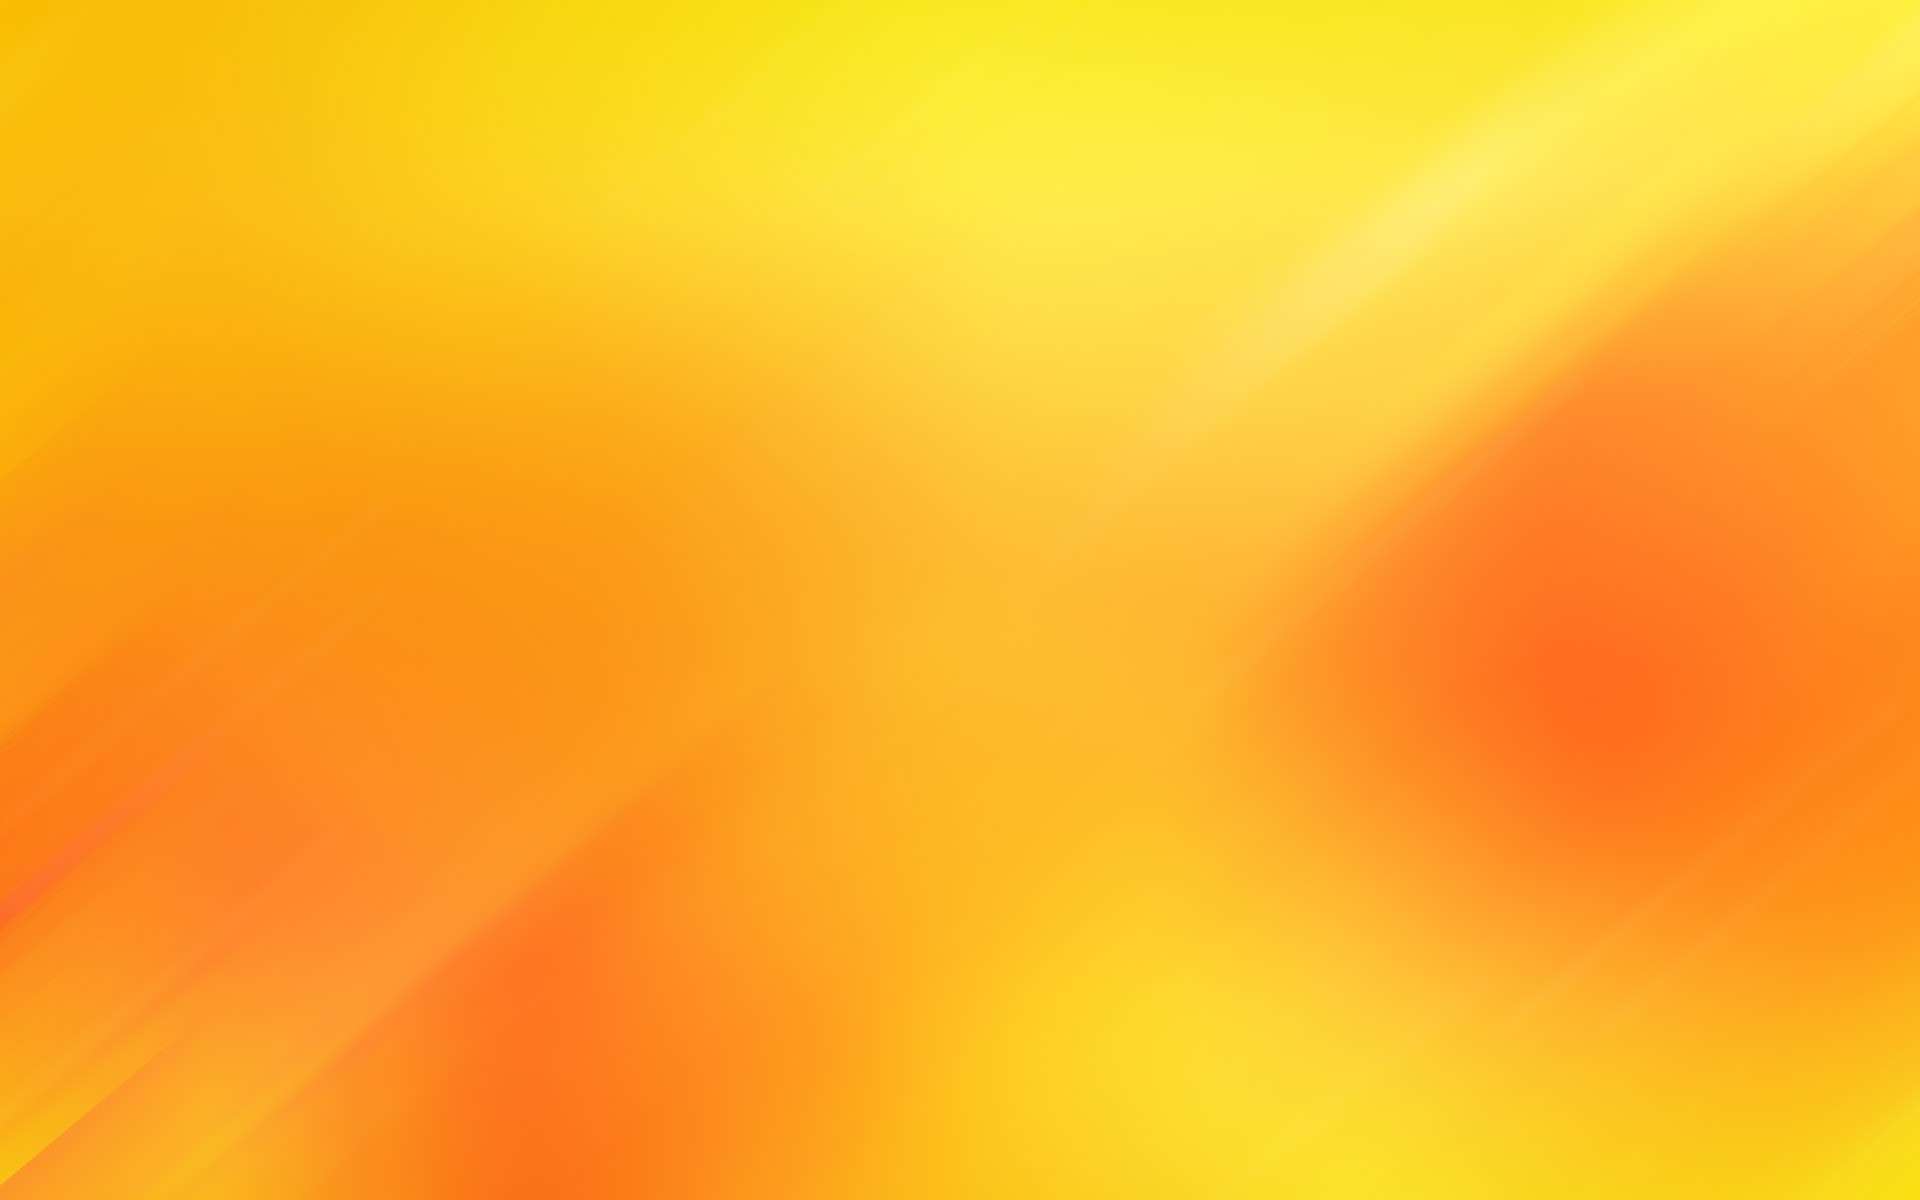 4,117,534 Orange Wallpaper Images, Stock Photos & Vectors | Shutterstock